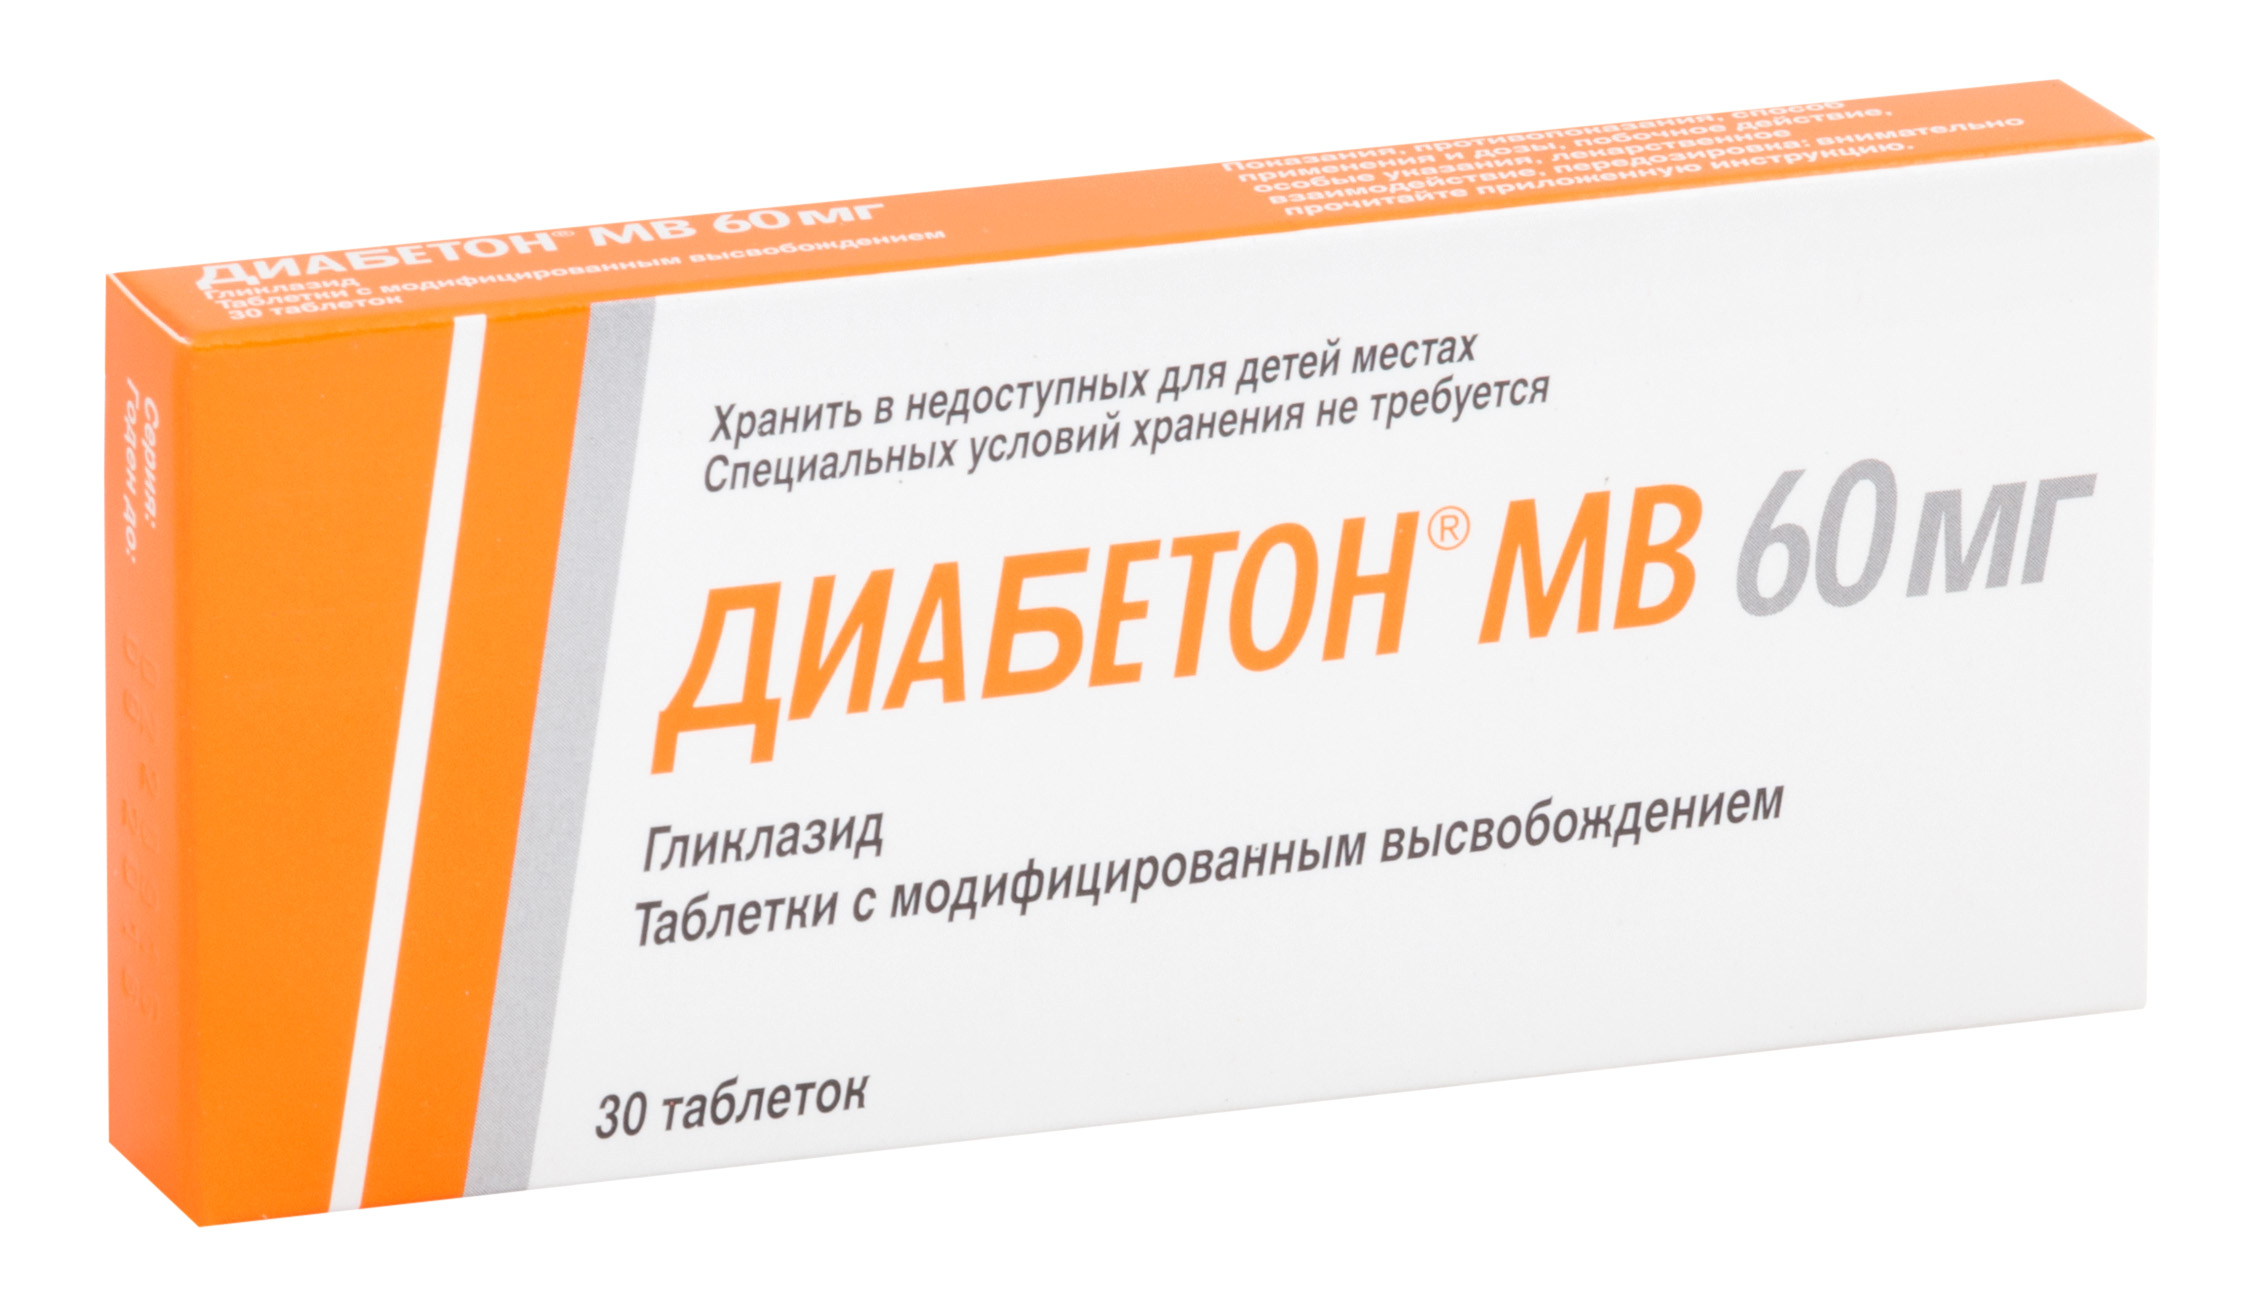 Купить Диабетон МВ таблетки 60 мг 30 шт., Servier